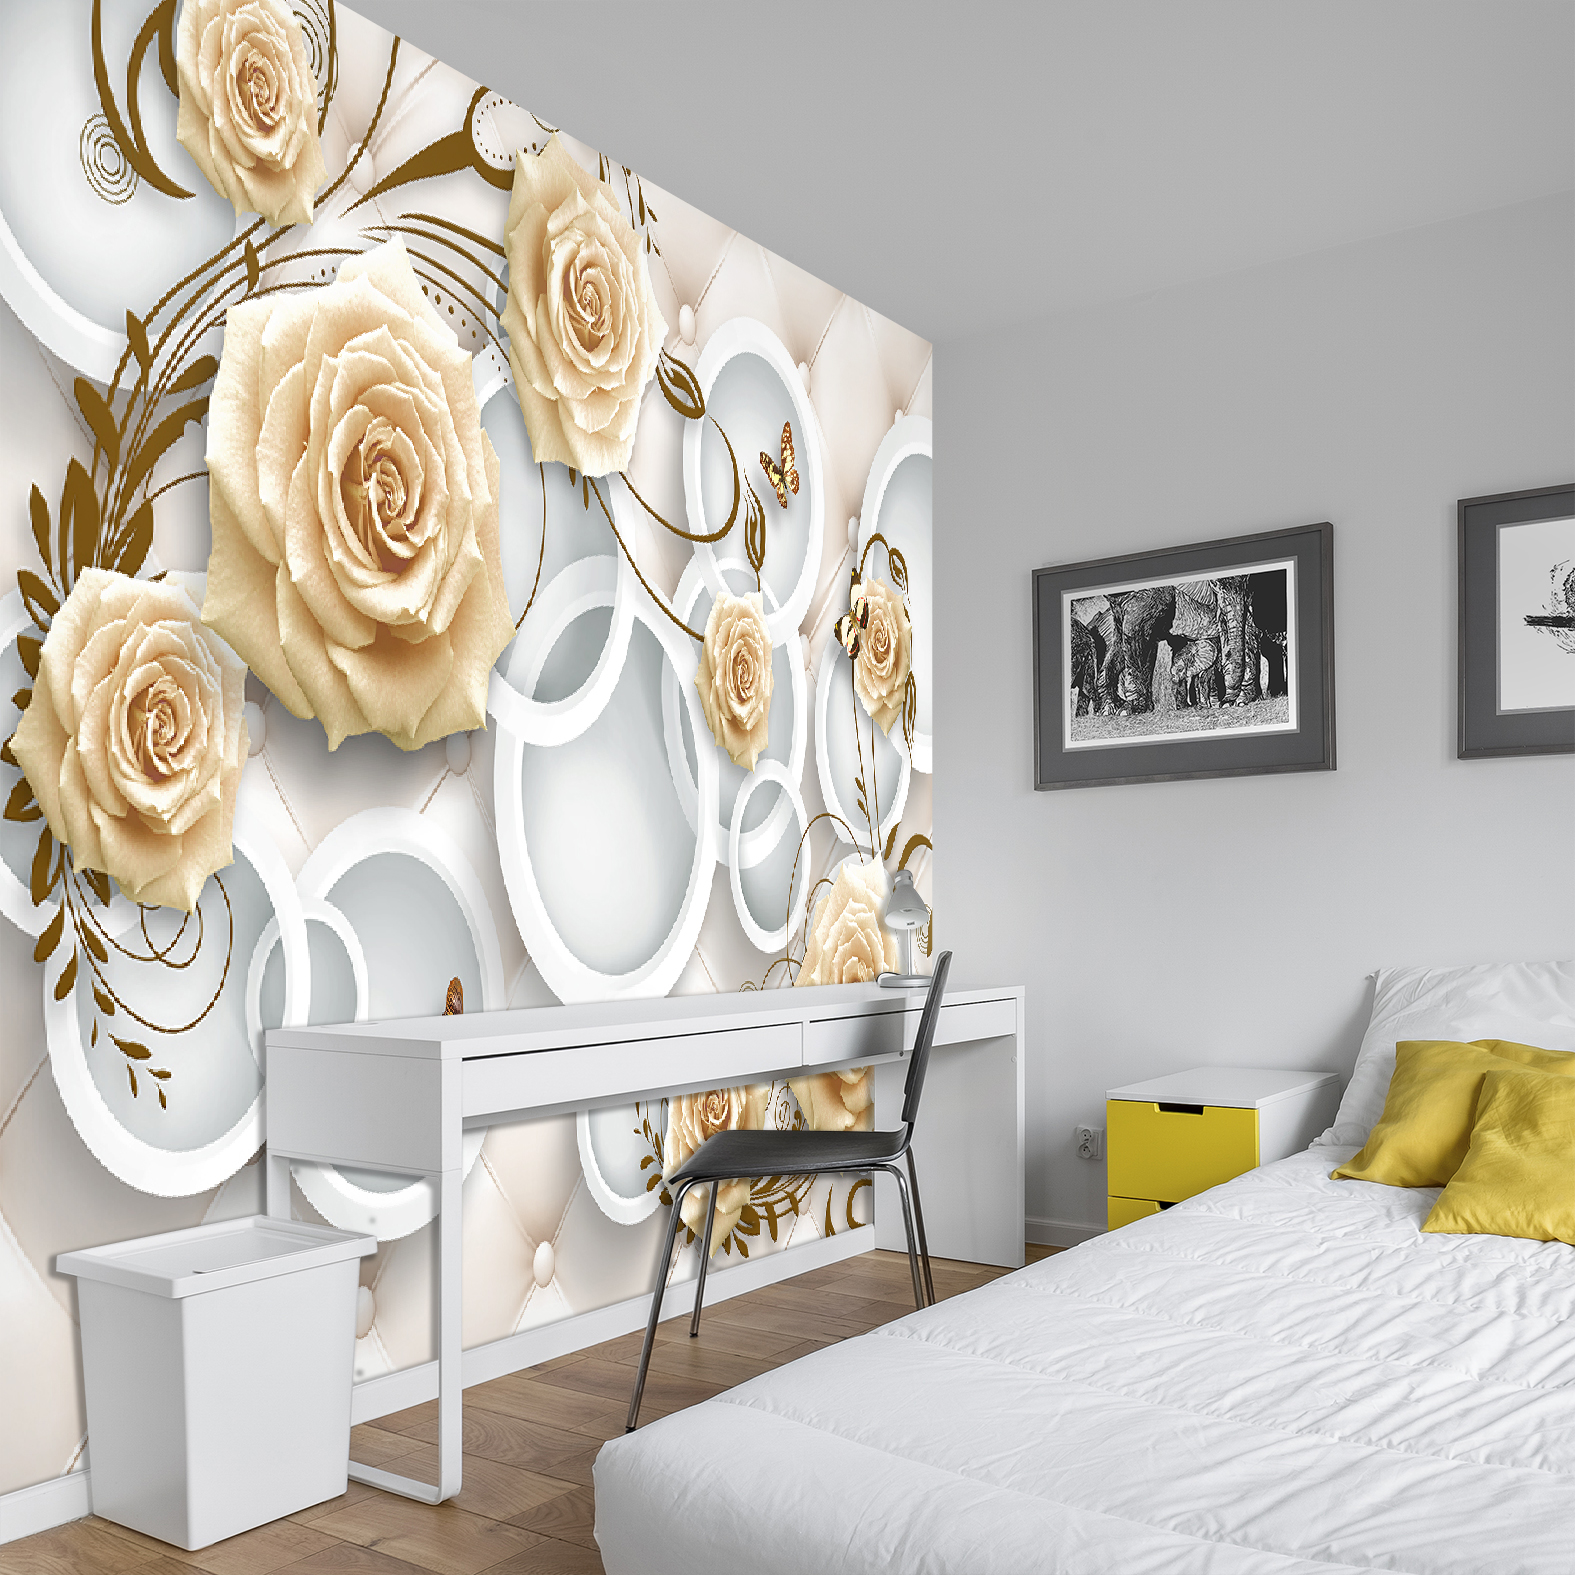 Фотообои Photostena 3D стена с чайными розами и кольцами 3,06 x 2 м